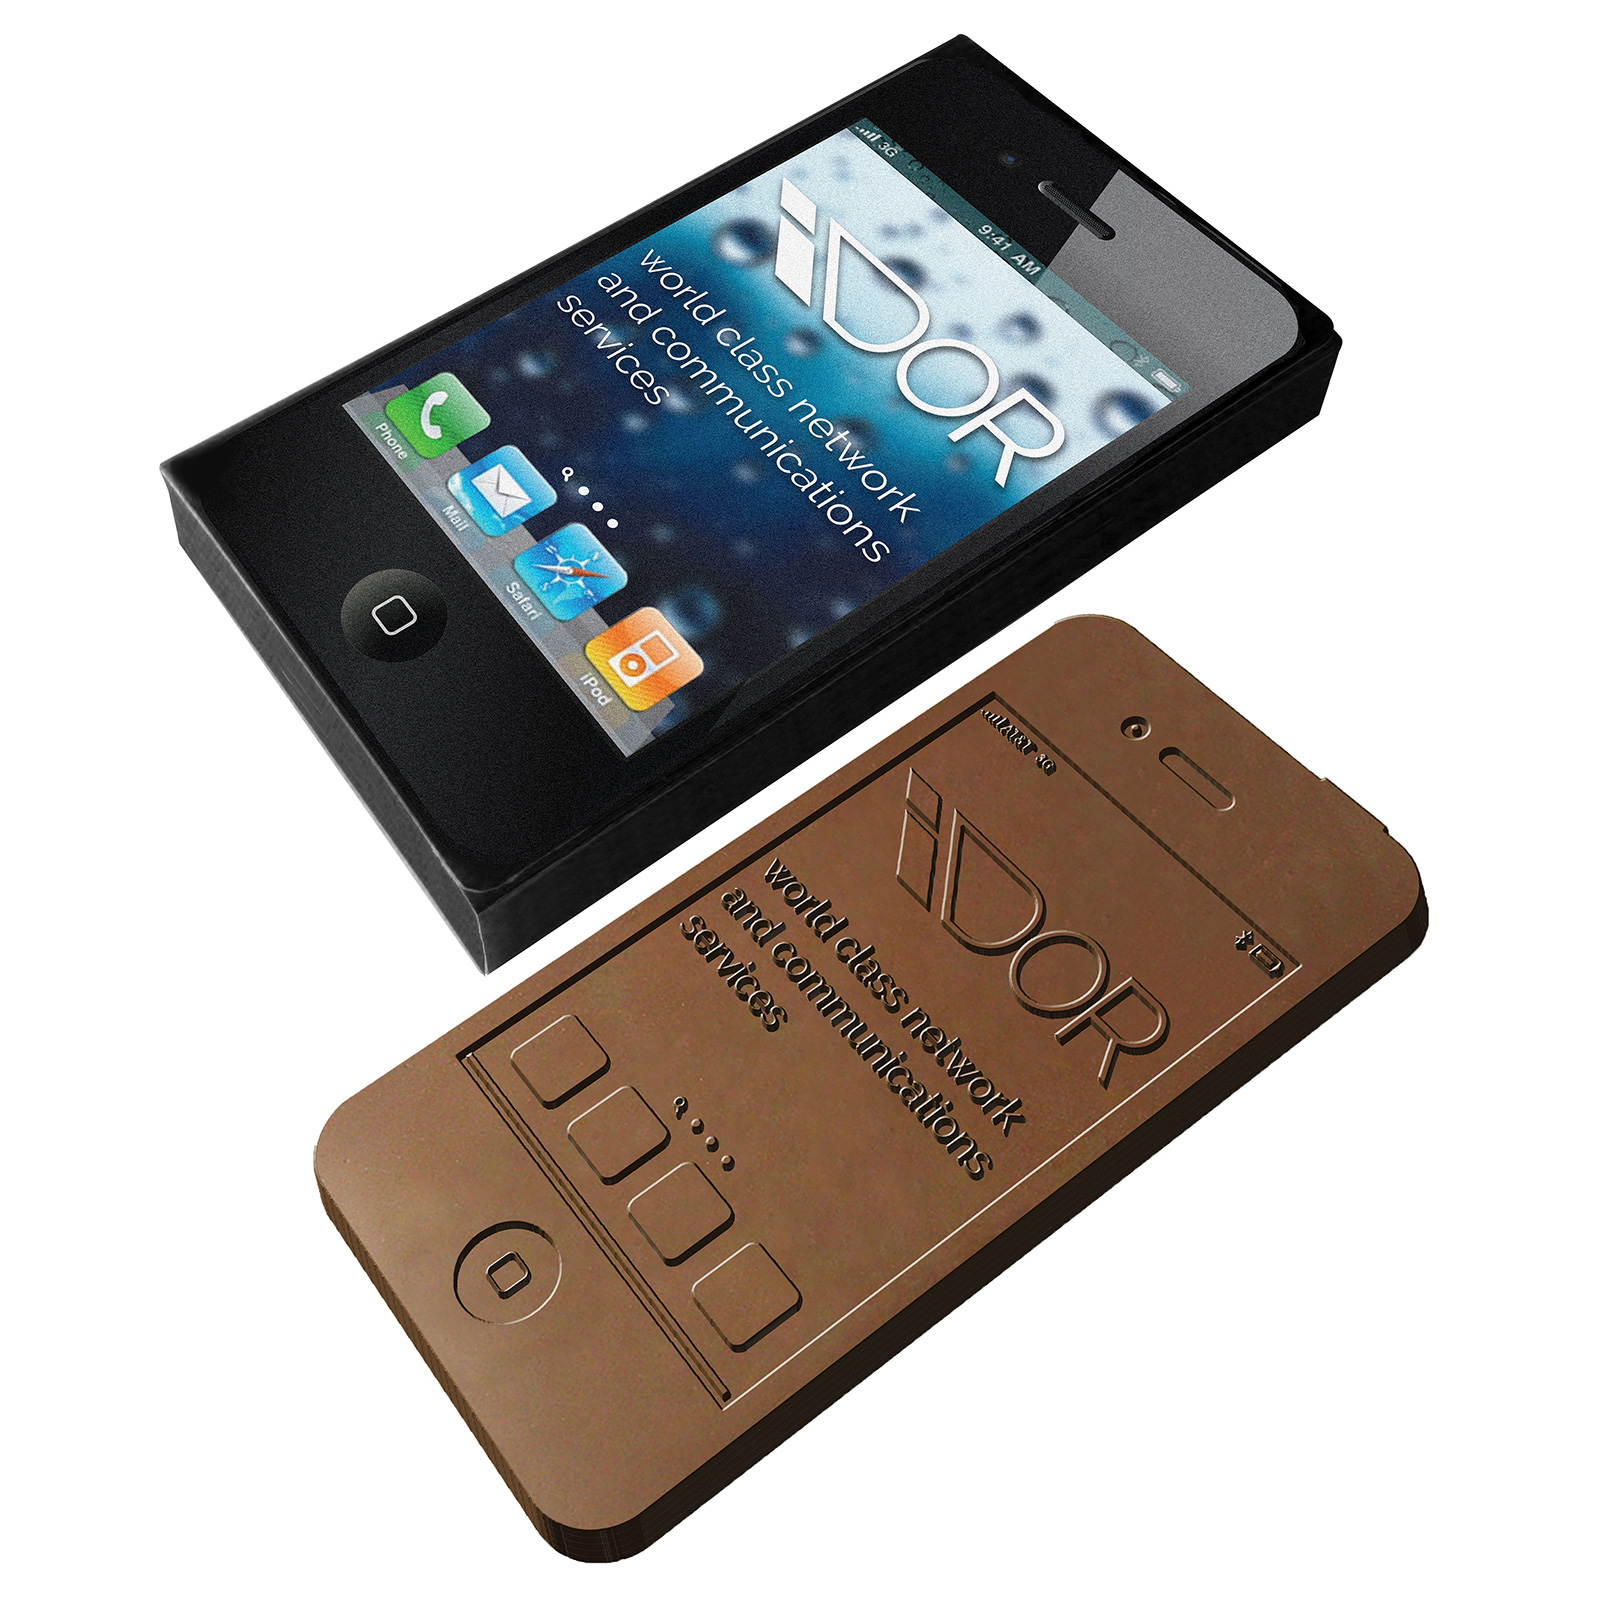 Scatola di Cioccolato a Forma di Smartphone Stampata a Colori Completi - Orciano Pisano